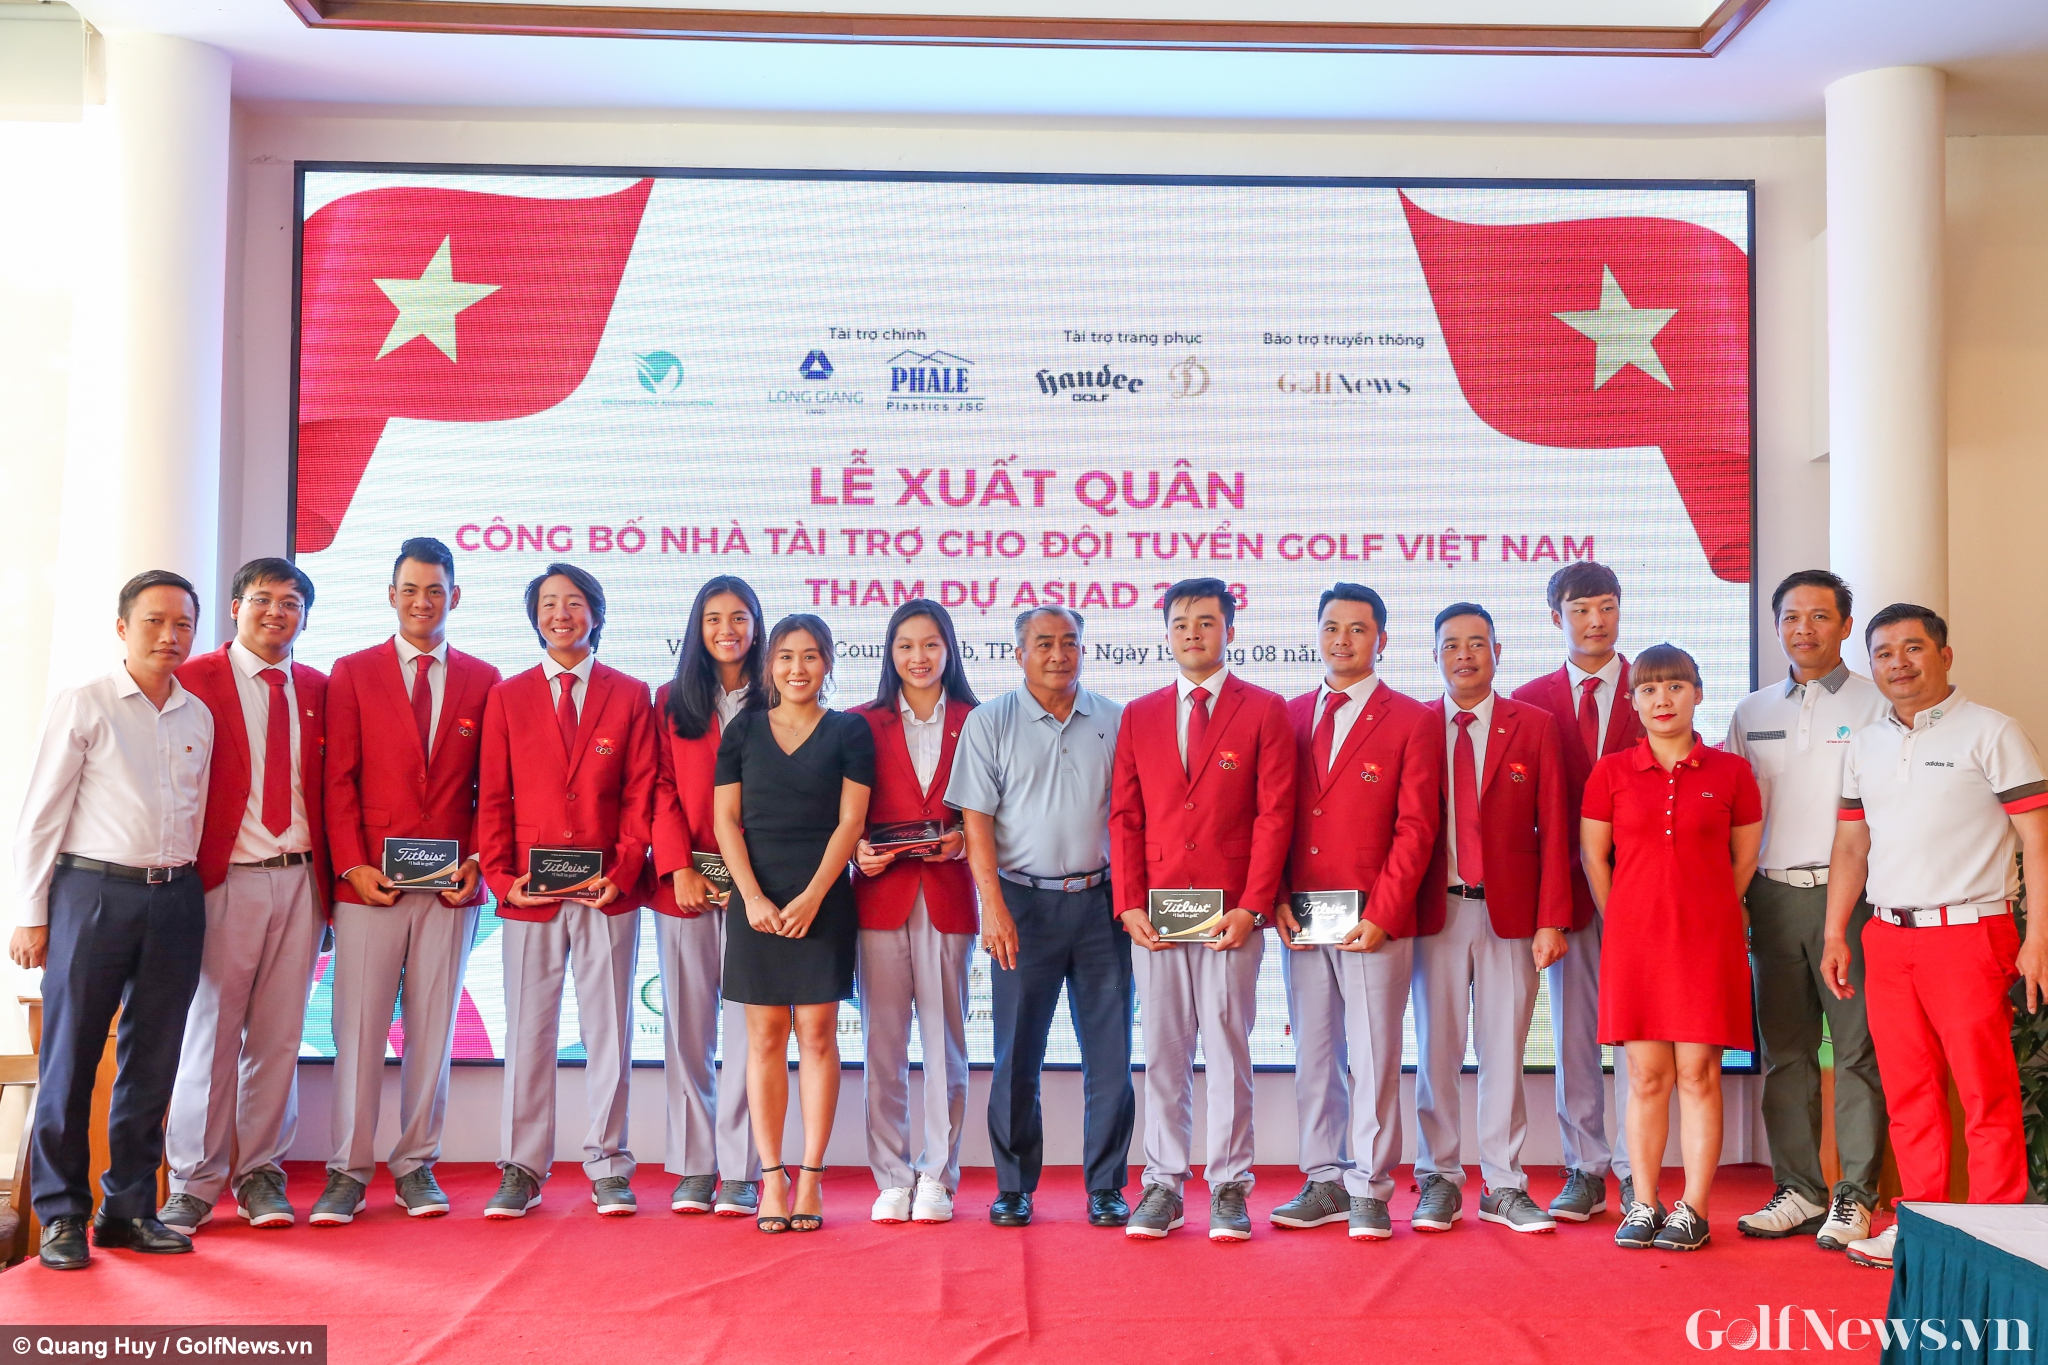 Toàn cảnh Lễ xuất quân ASIAD 18 của tuyển golf Việt Nam